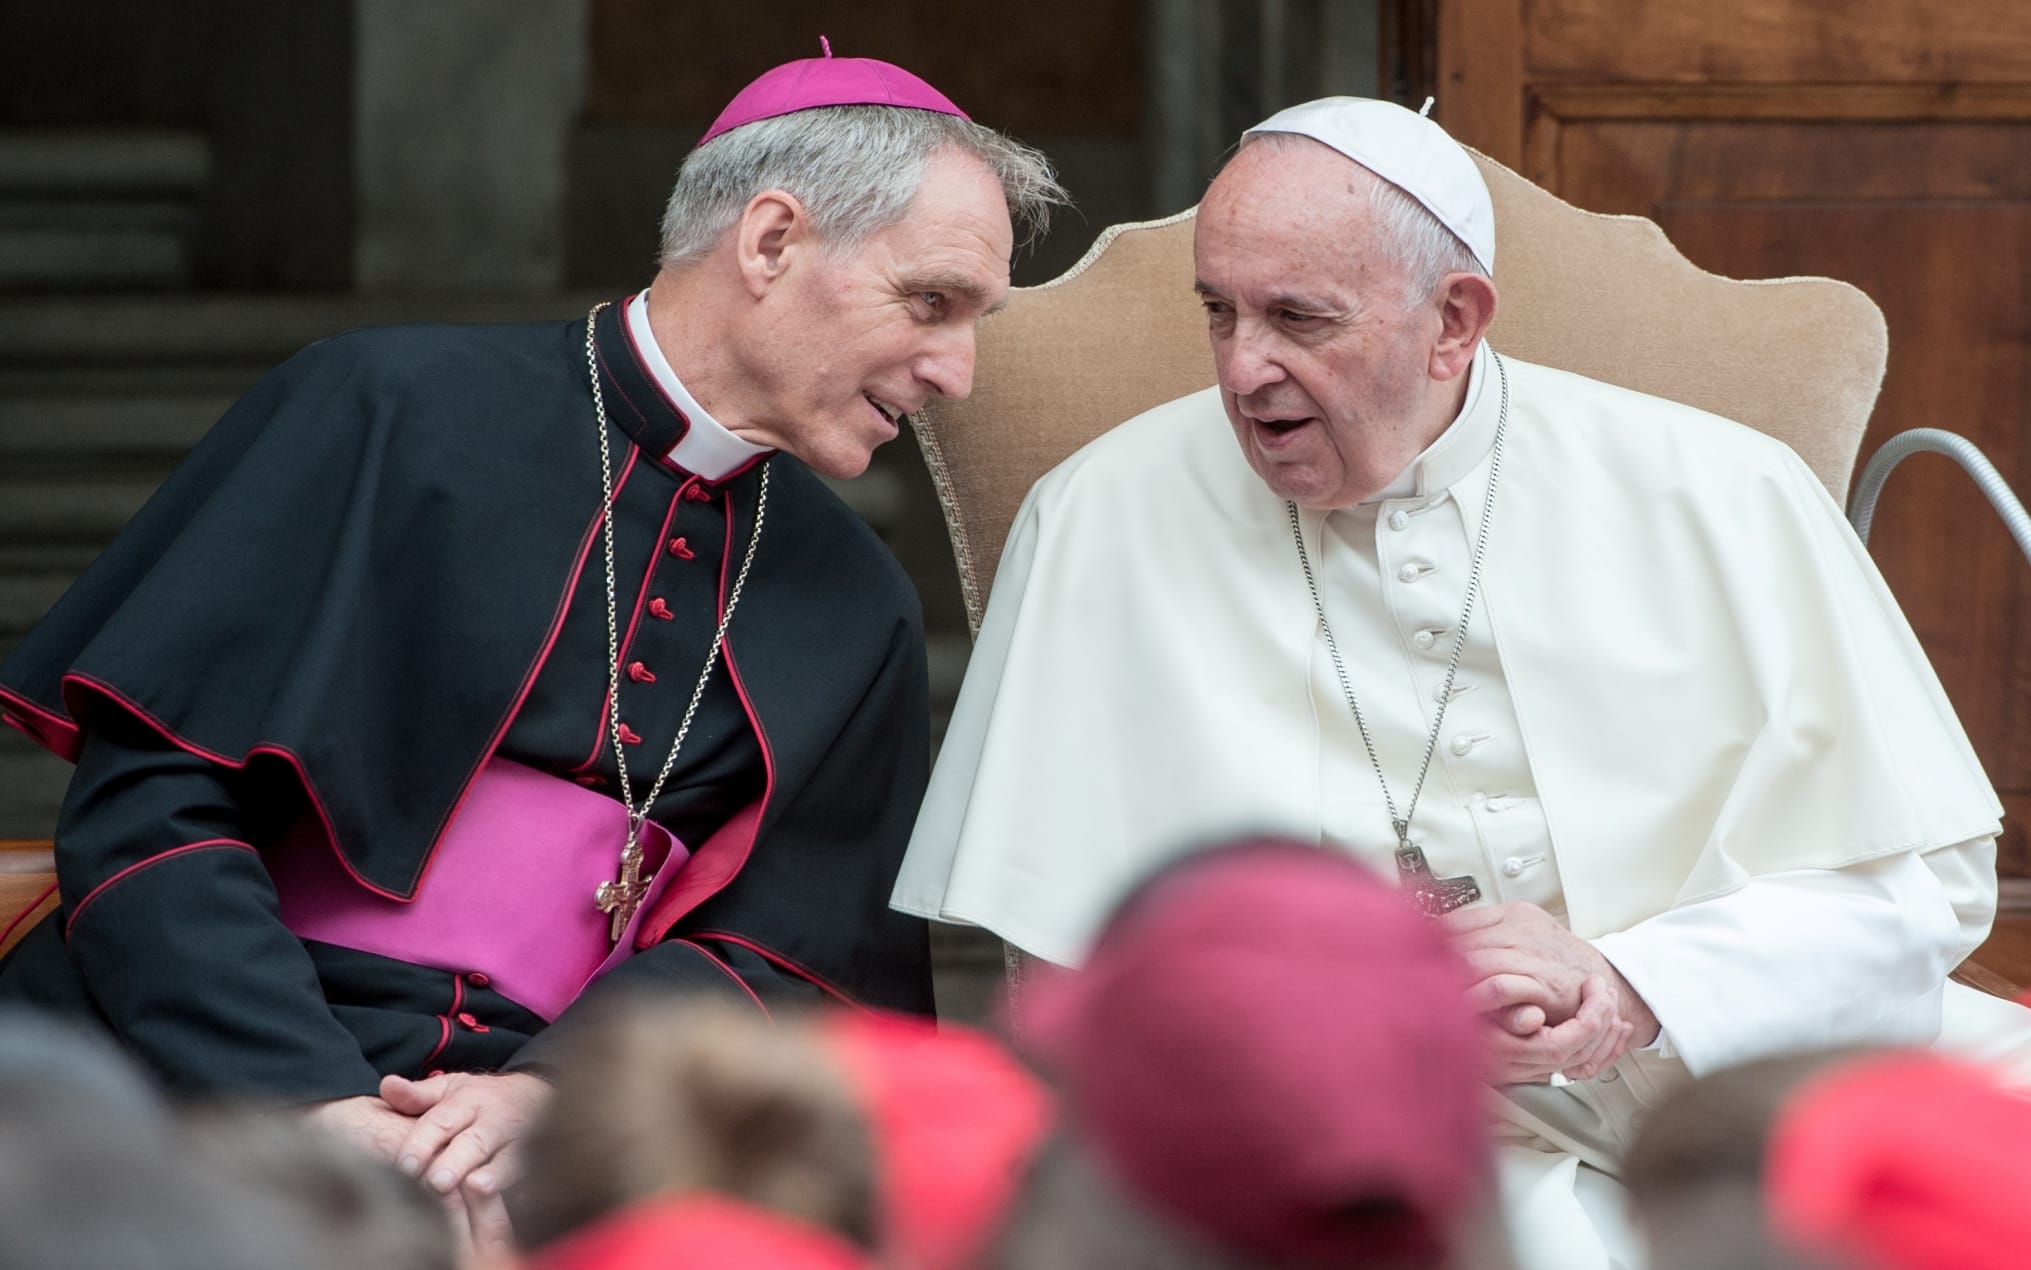 Il Papa ordina a monsignor Gaenswein di lasciare il Vaticano e tornare in Germania